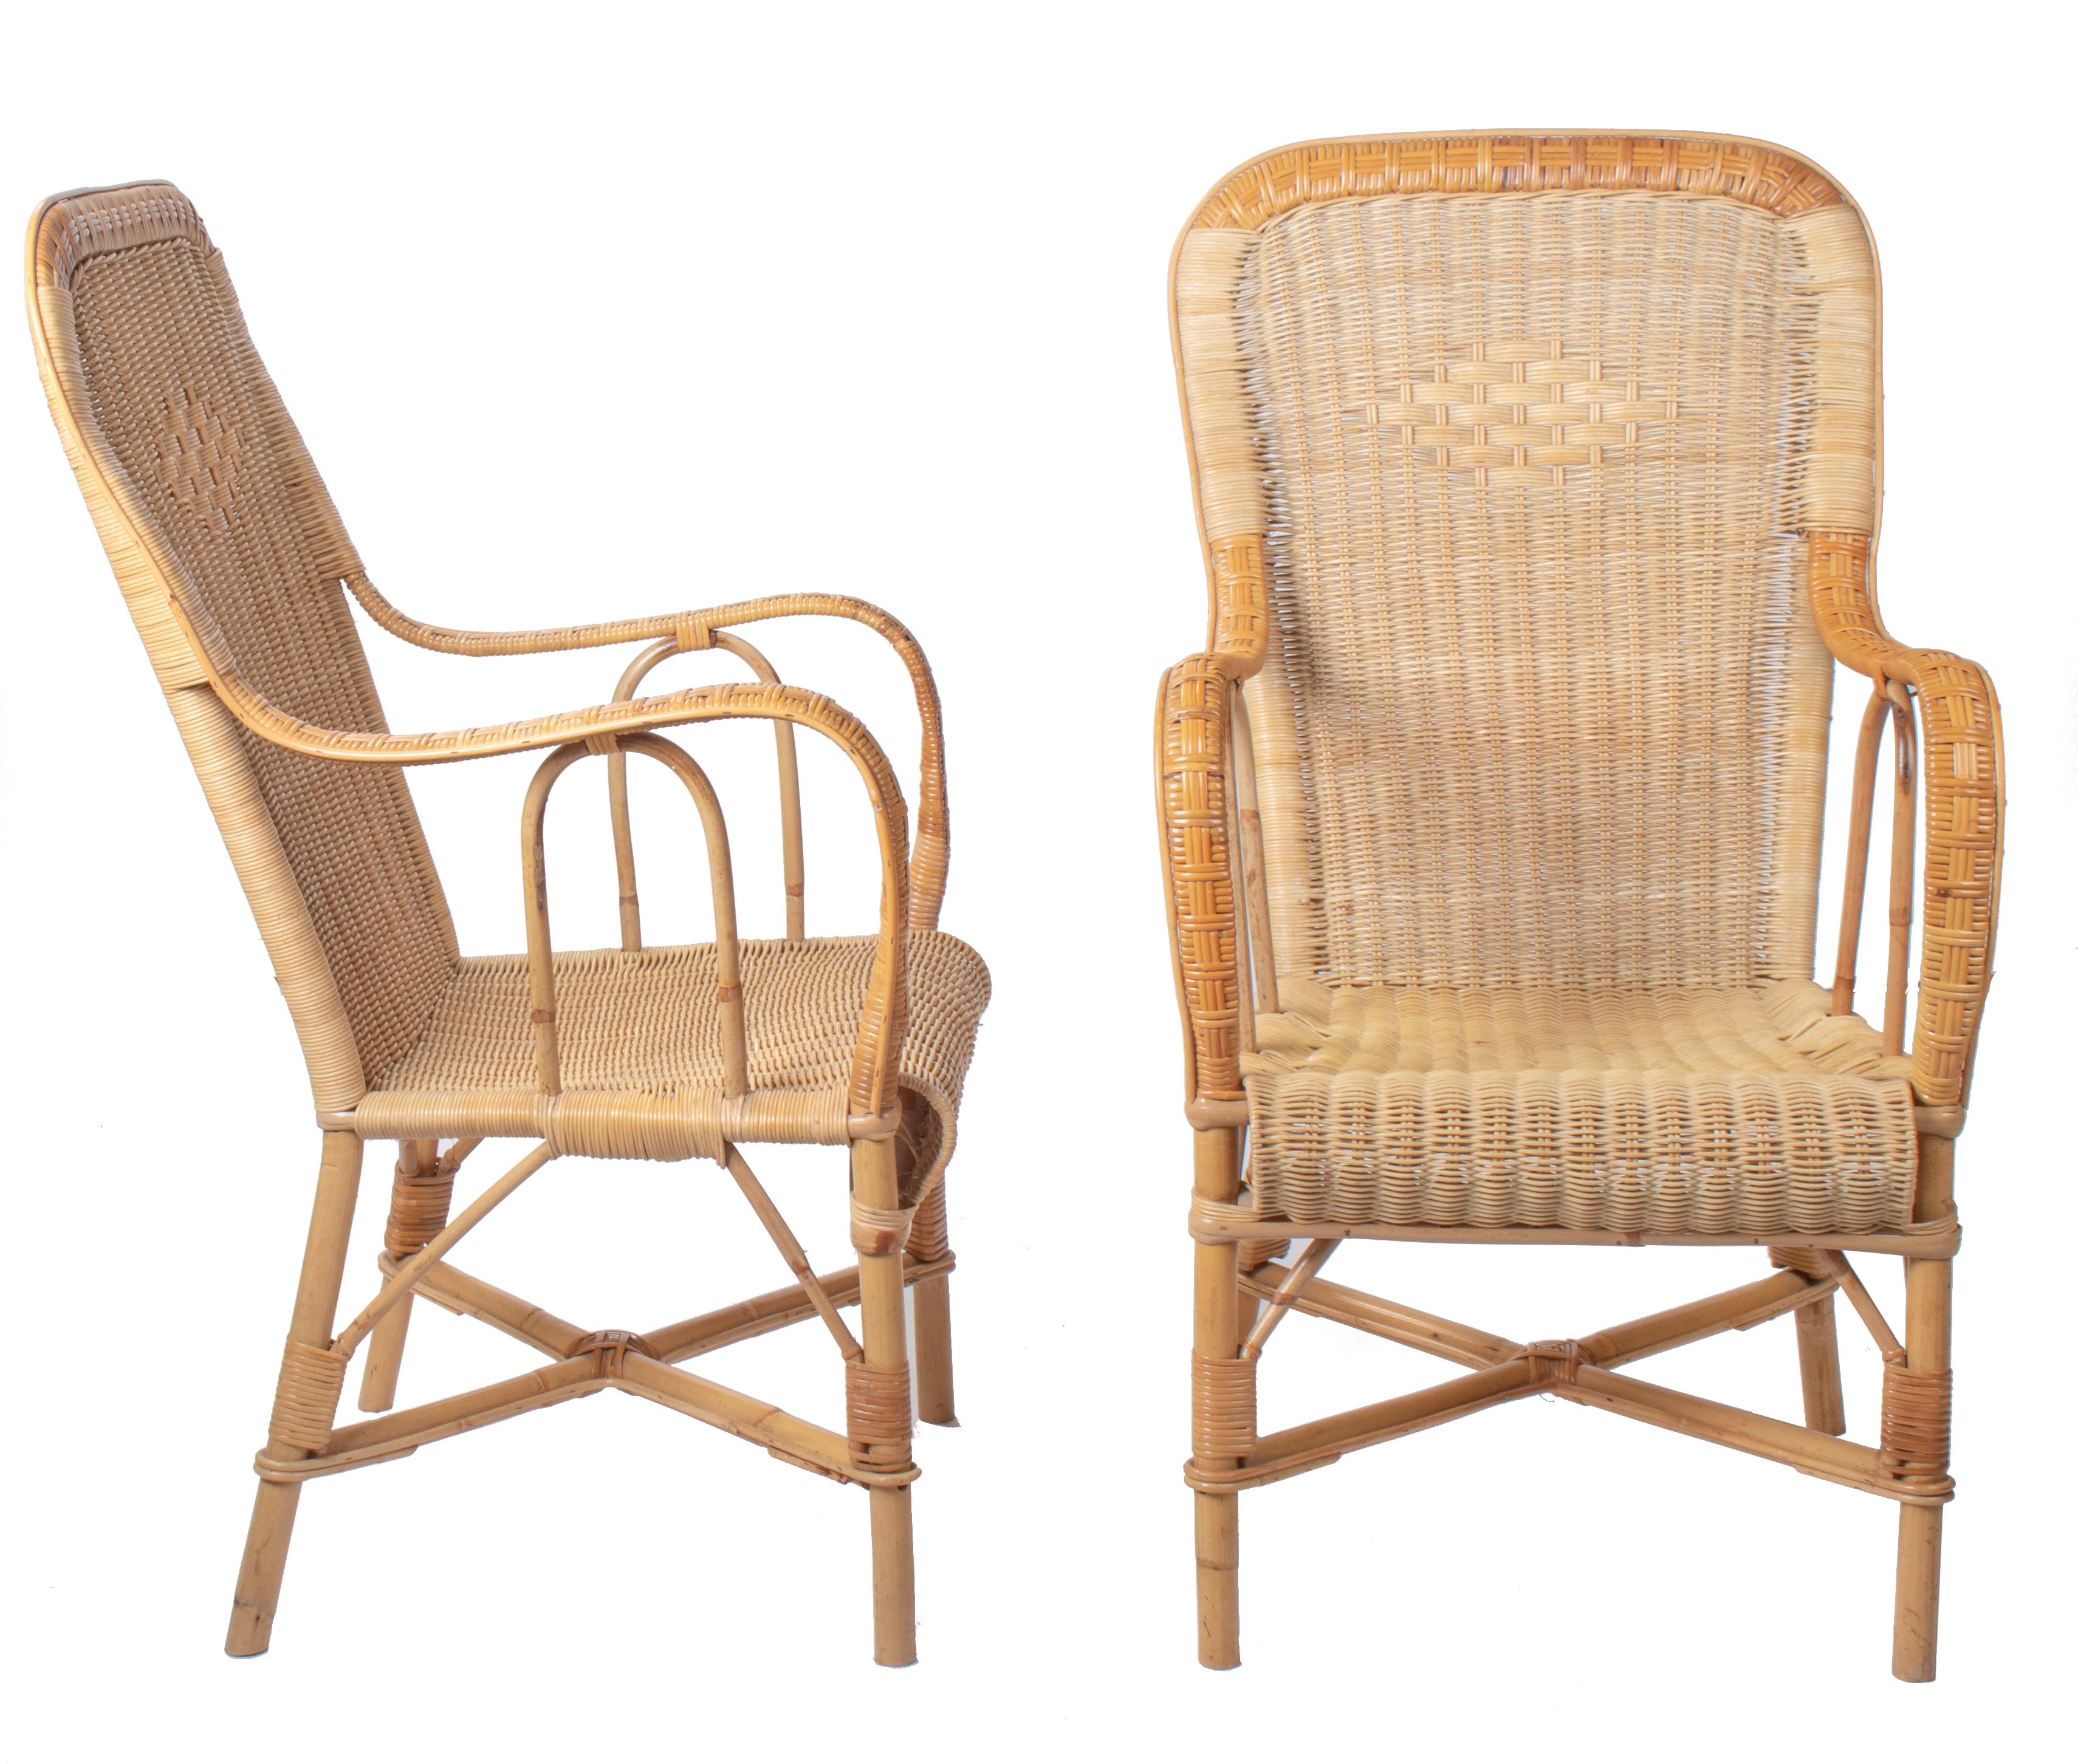 Zwei spanische, handgefertigte Sessel aus Weide und Bambus aus den 1970er Jahren.